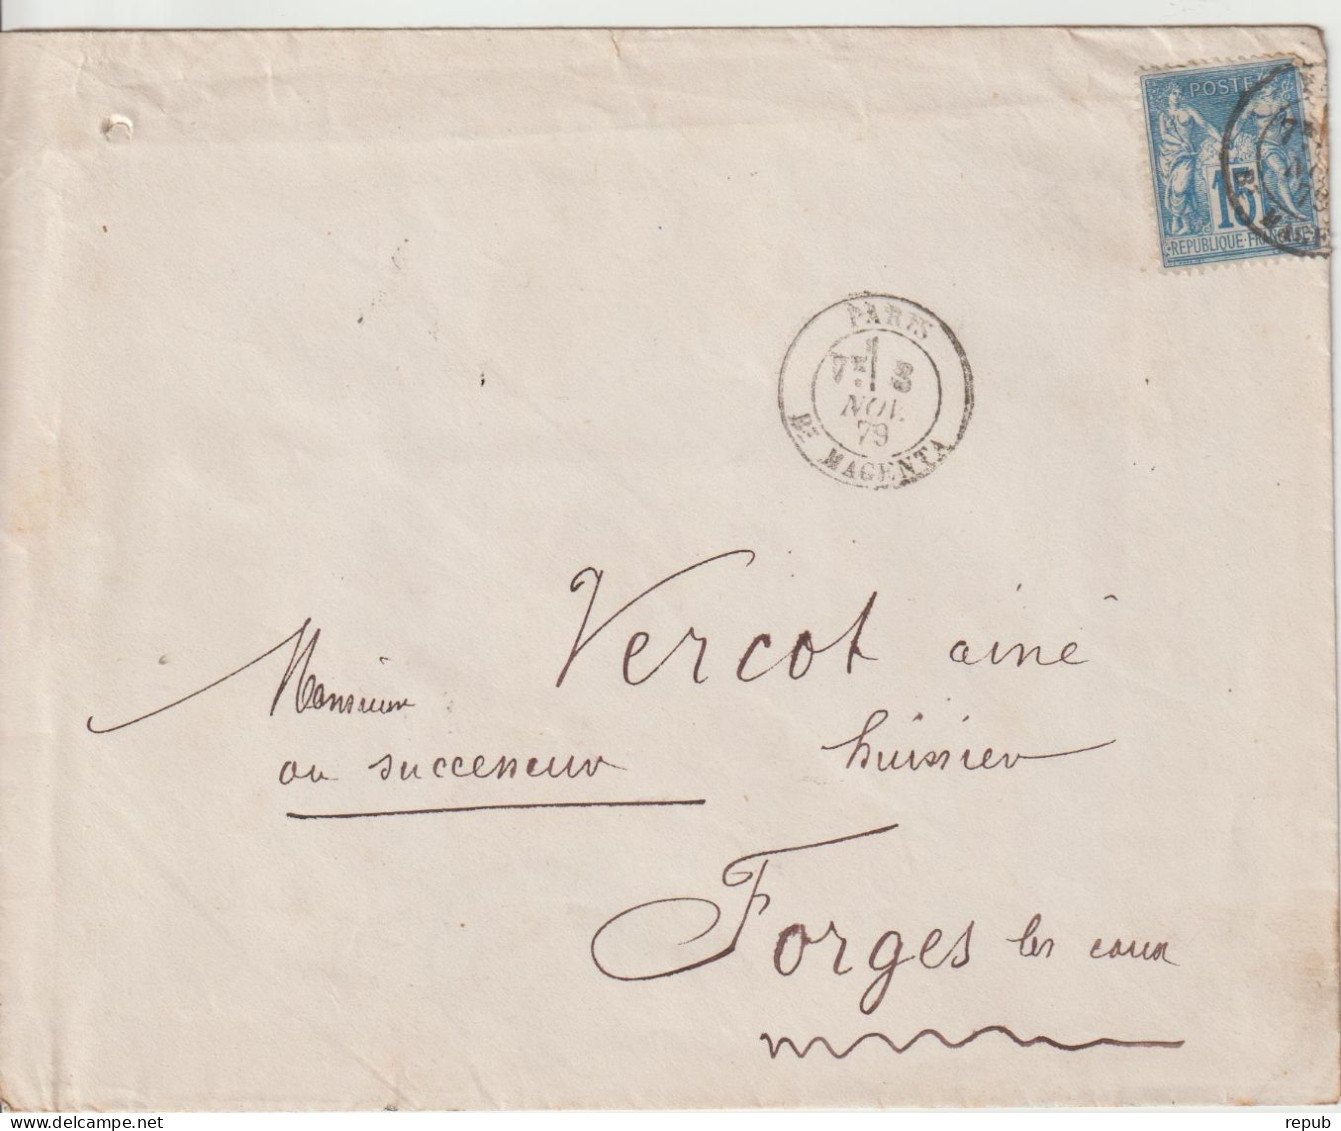 France Lettre 1879 De Paris Bd Magenta Pour Forges (76) - 1877-1920: Période Semi Moderne